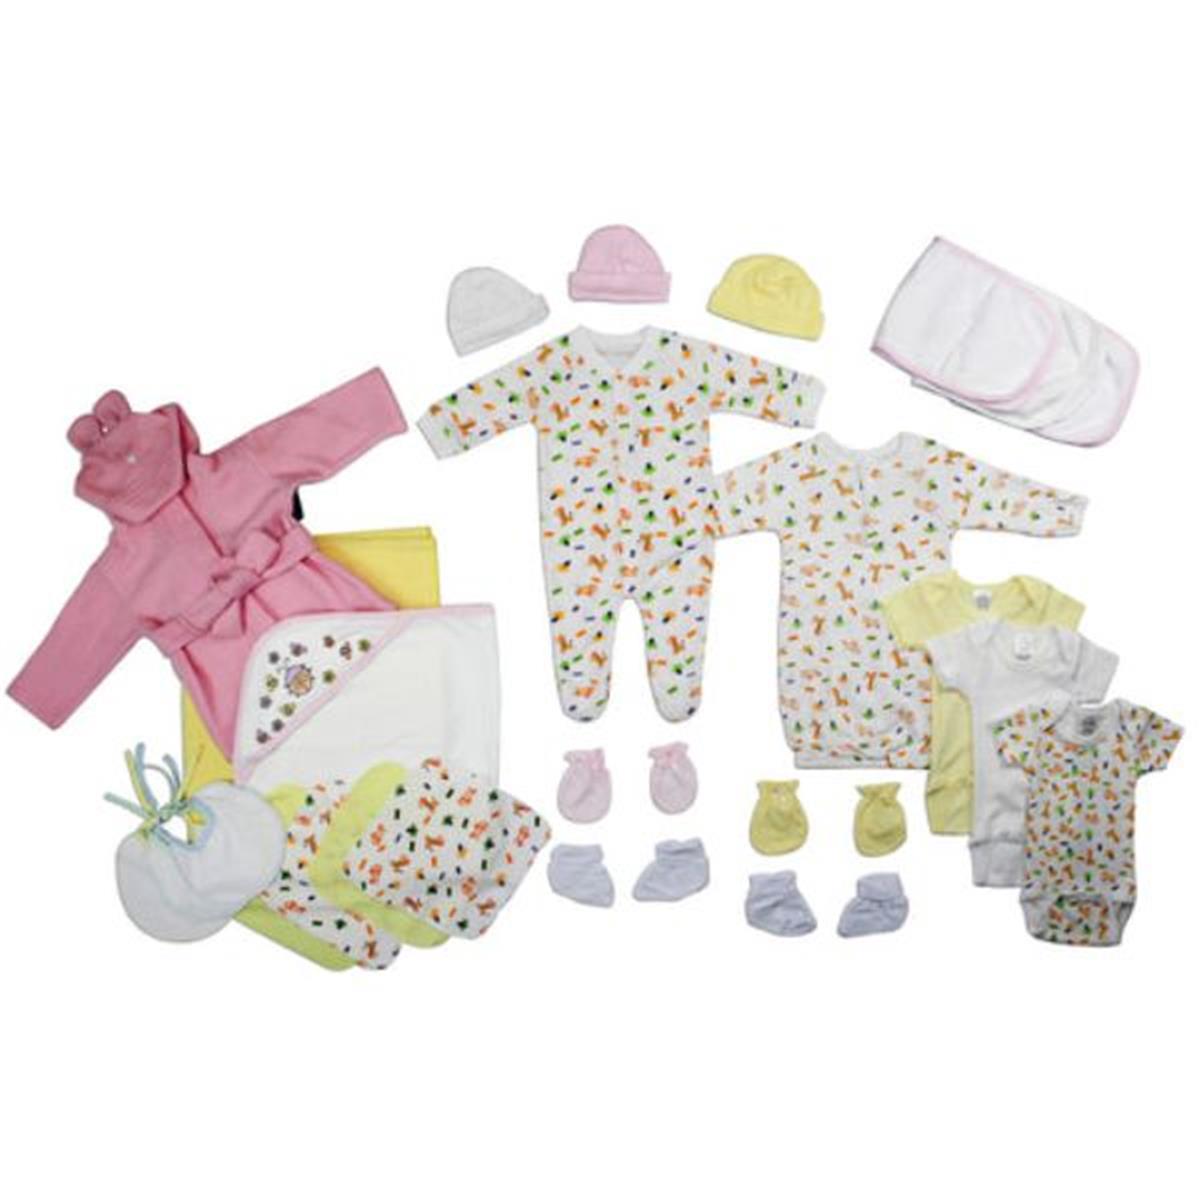 Bambini LS-0119 Newborn Baby Girls Layette Baby Shower Gift Set&#44; White & Pink - Newborn